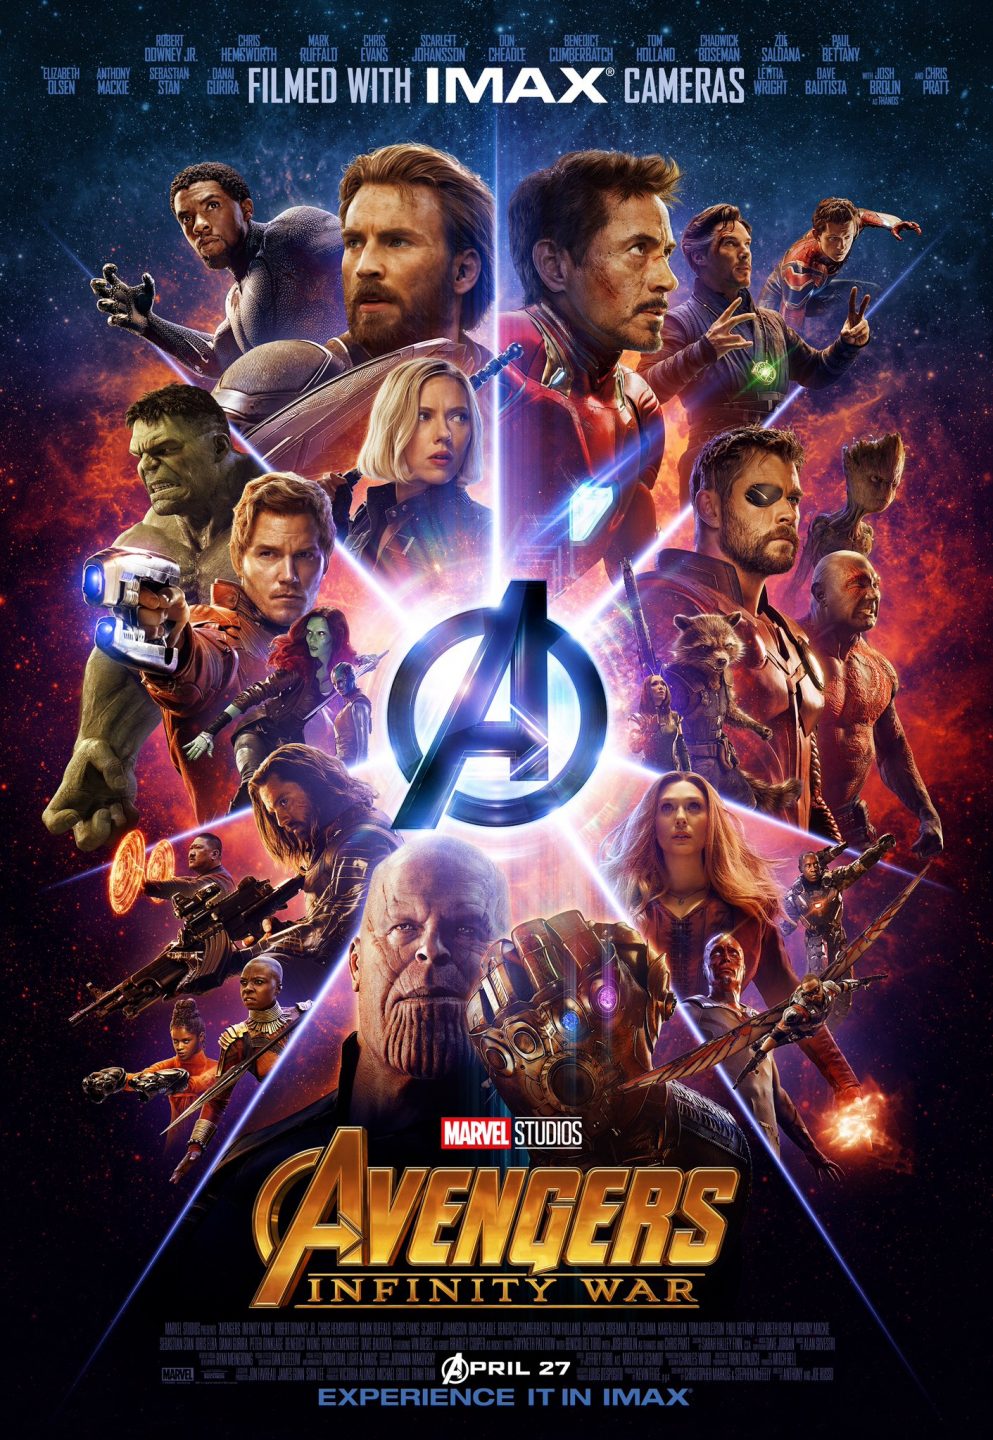 Avengers: Infinity War poster (Marvel Studios)